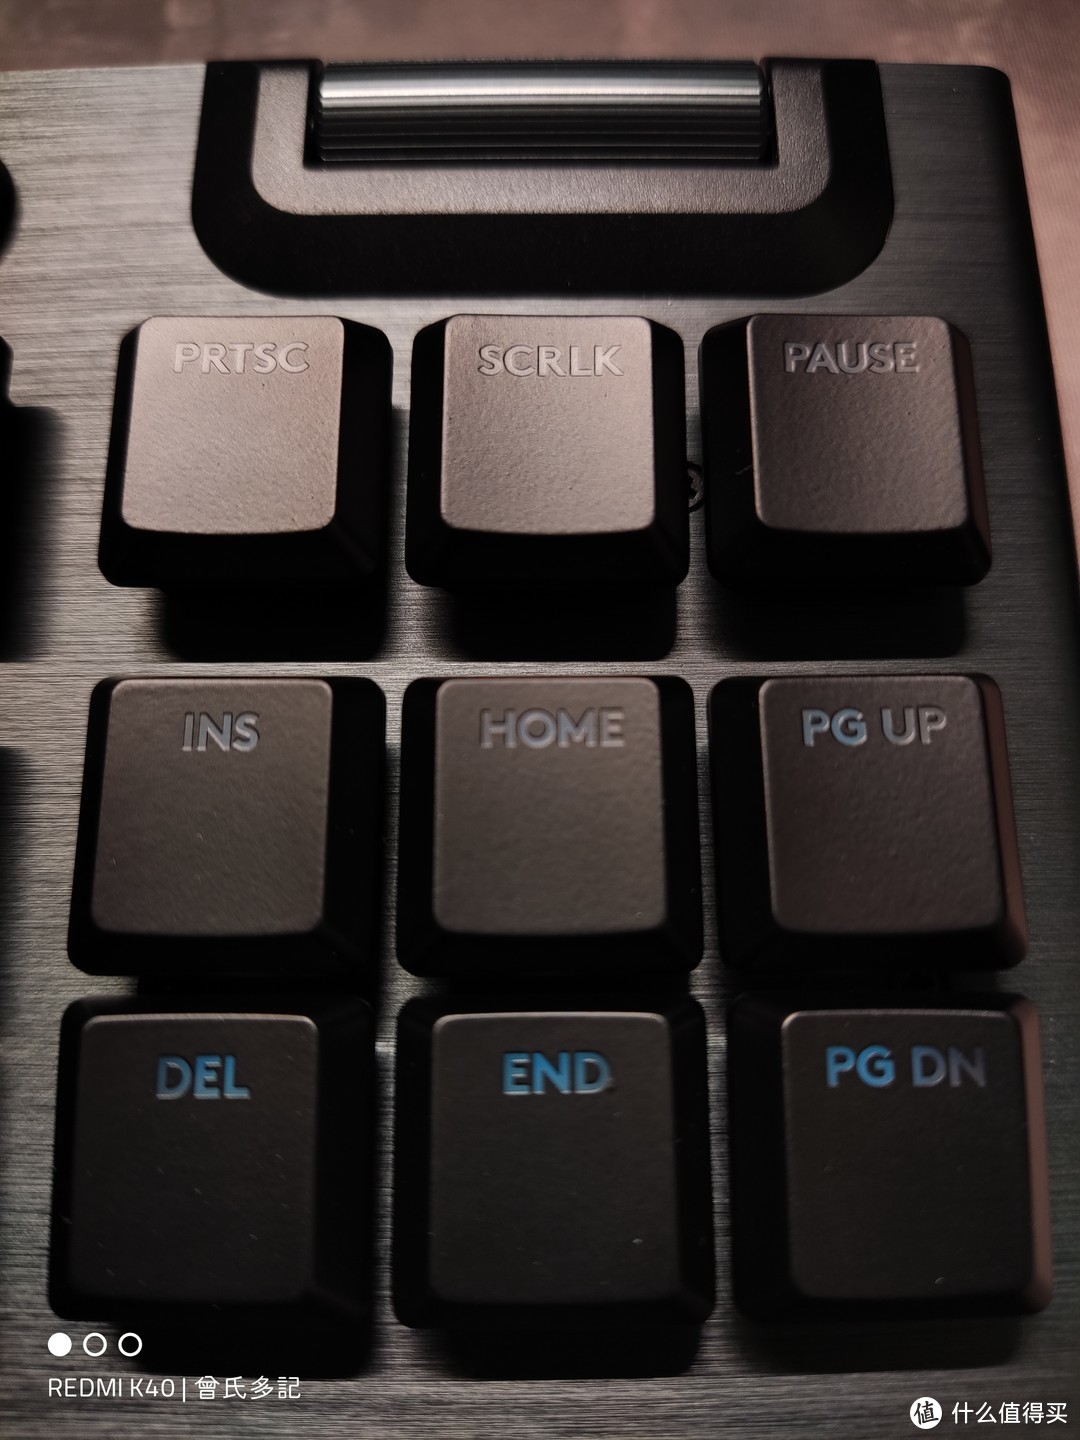 这些键还是很常用的！键盘整体设计很耐看，虽然是游戏系，但大厂的东西还是极力避免过于杀马特。当个普通键盘用也不是不可以，哈哈哈！